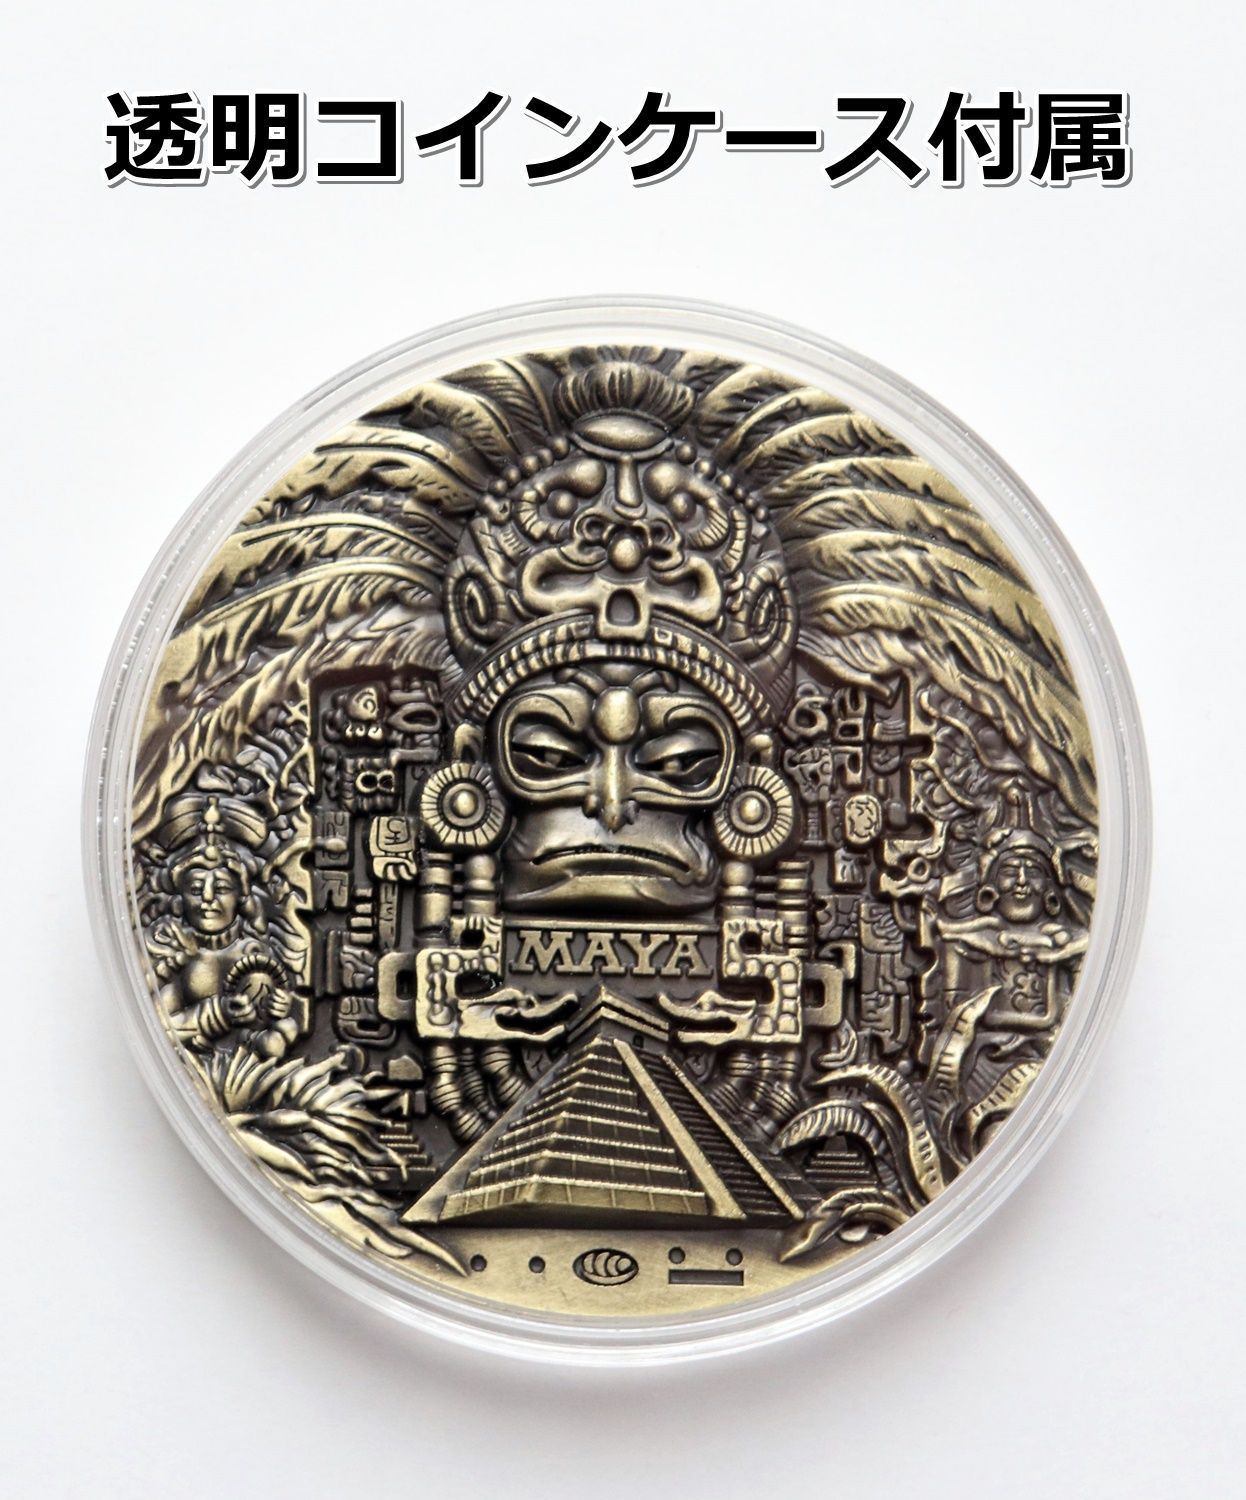 マヤ・アステカ文明 コイン マヤ暦カレンダー コレクション 合金製 透明ケース入 - メルカリ